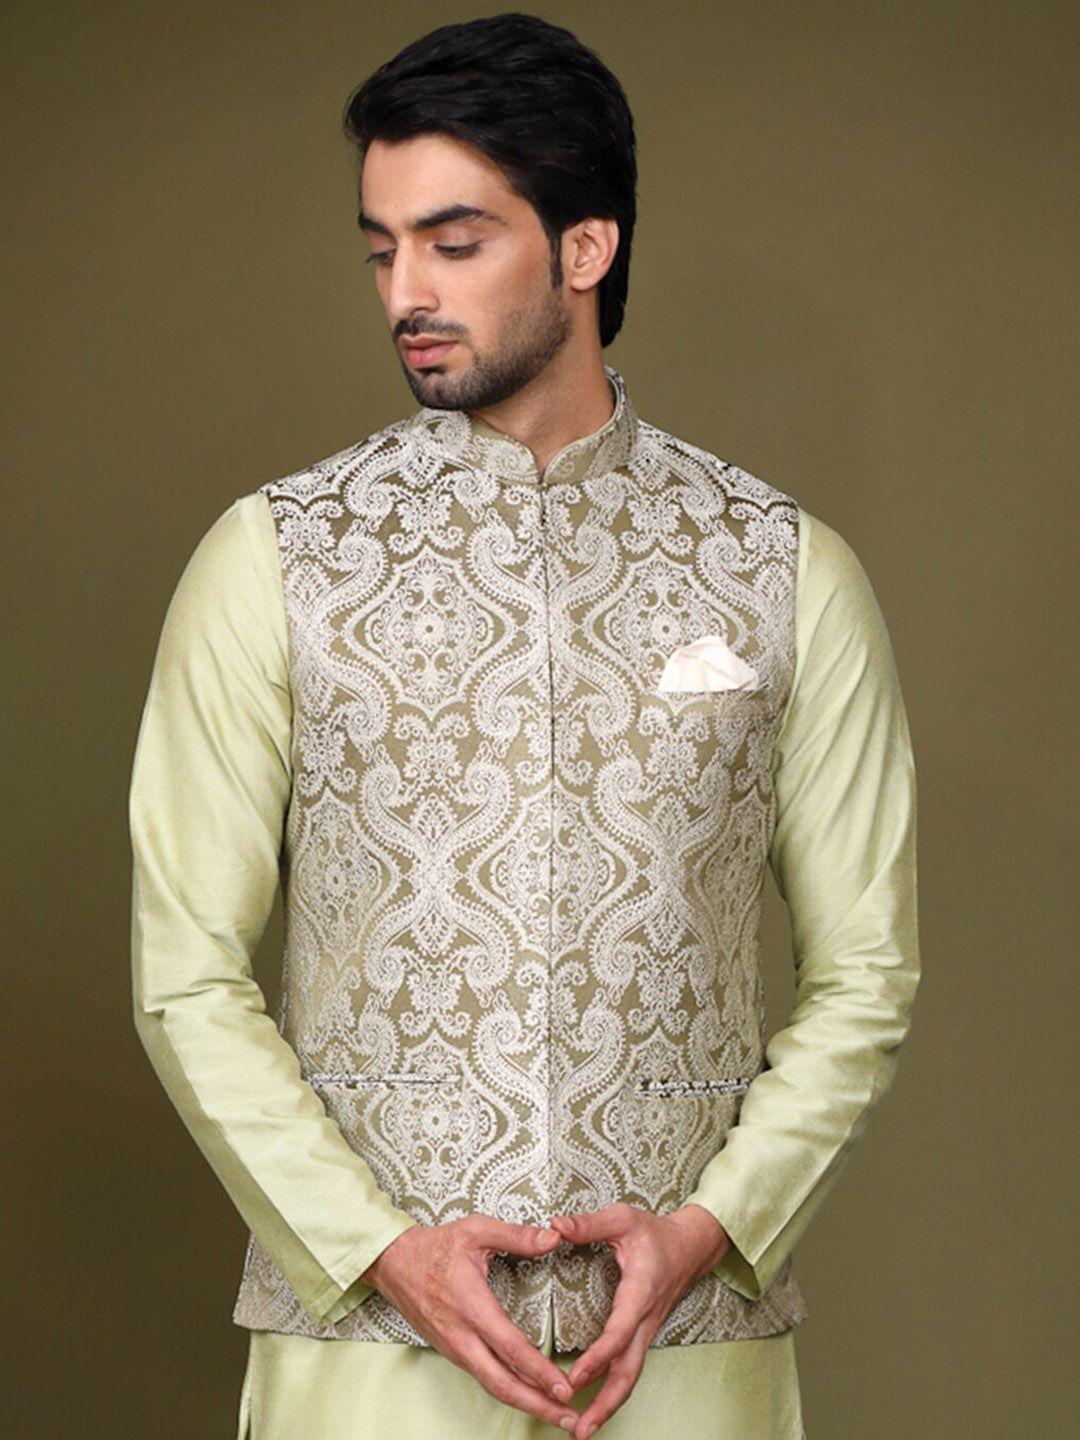 kisah men woven design nehru jacket with pocket square